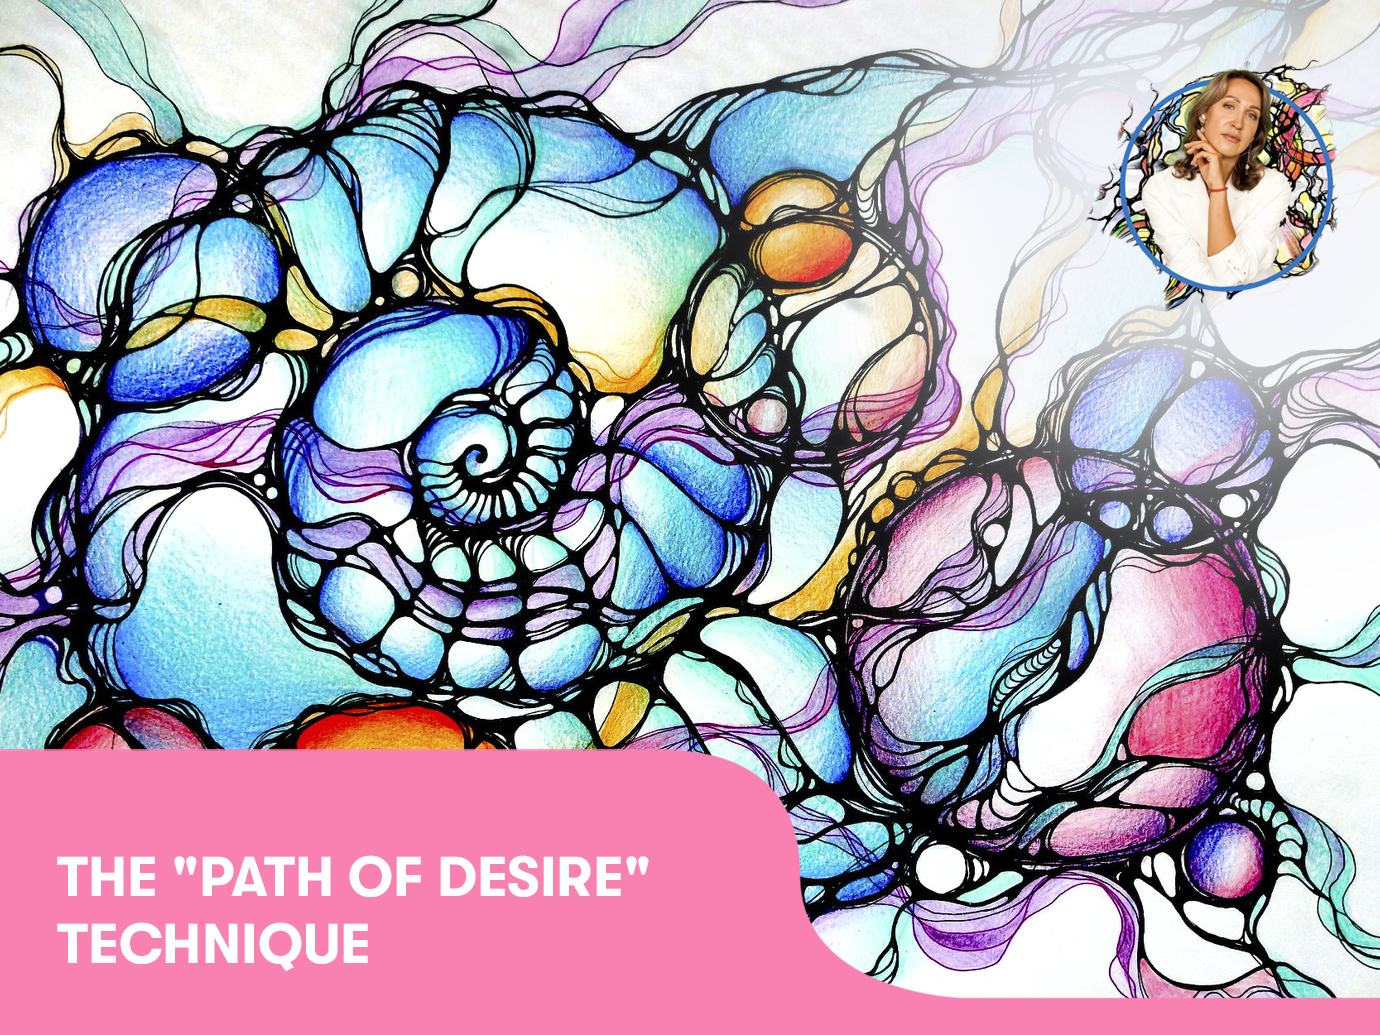 The “Path of Desire“ technique